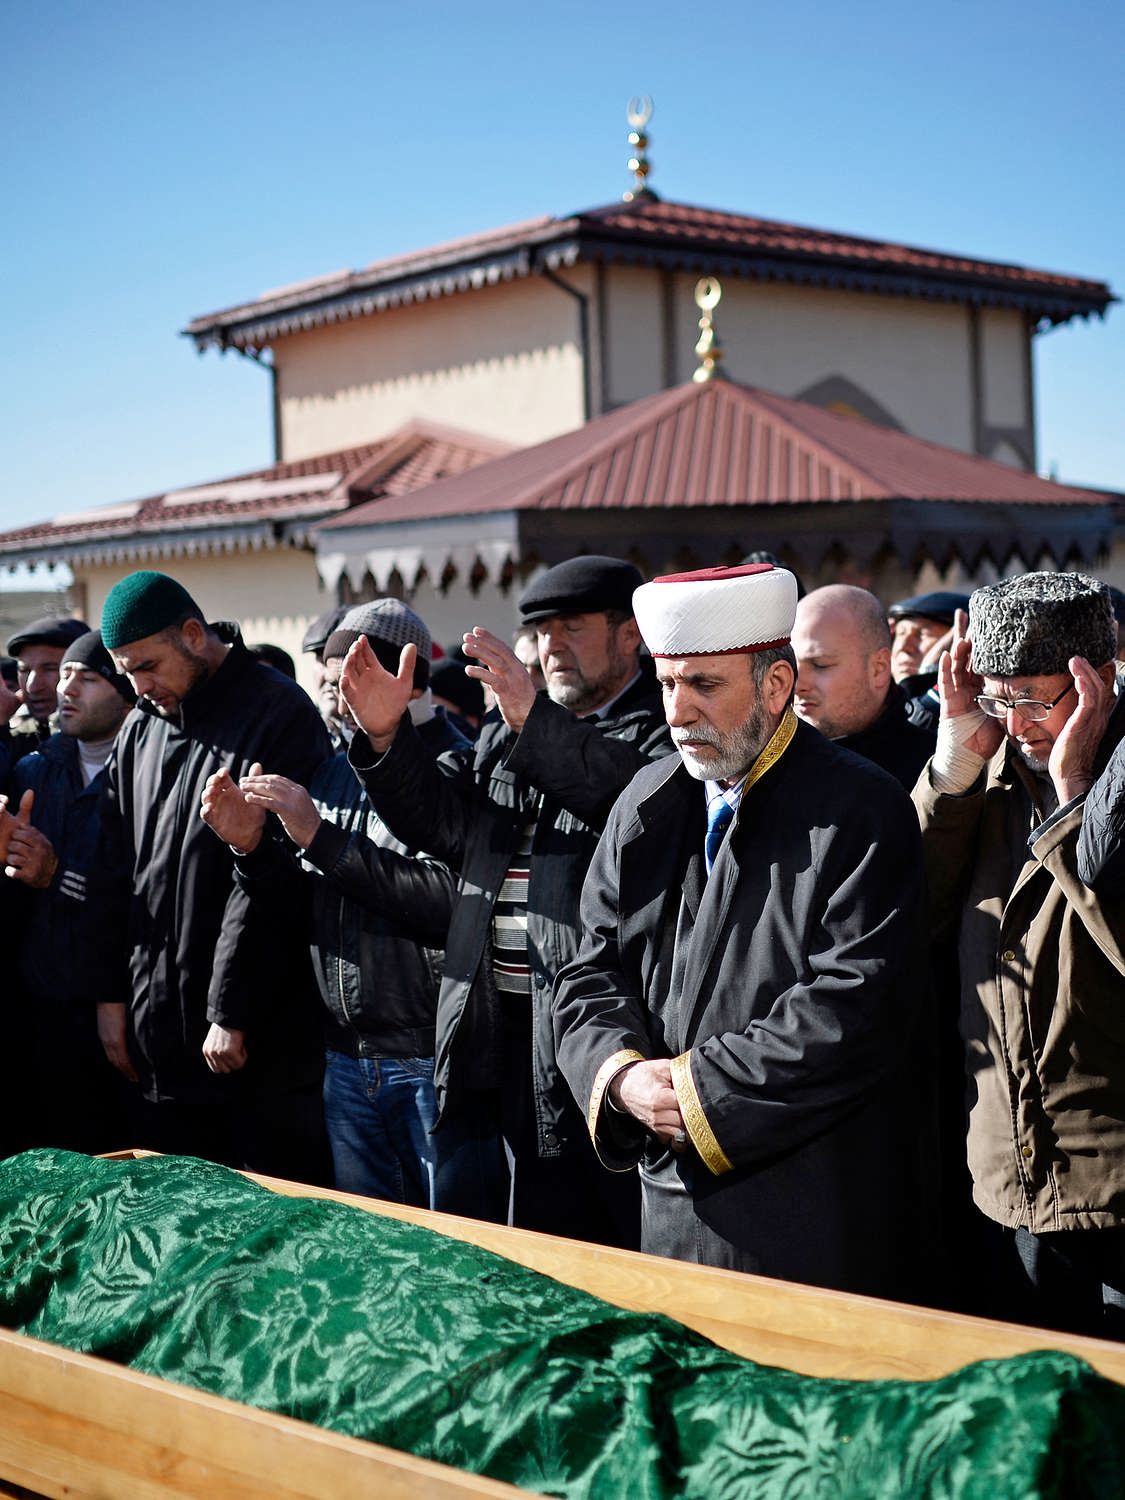 Похорони ислама. Похороны мусульман татар. Похороны по мусульманским традициям. Погребальный обряд крымских татар.